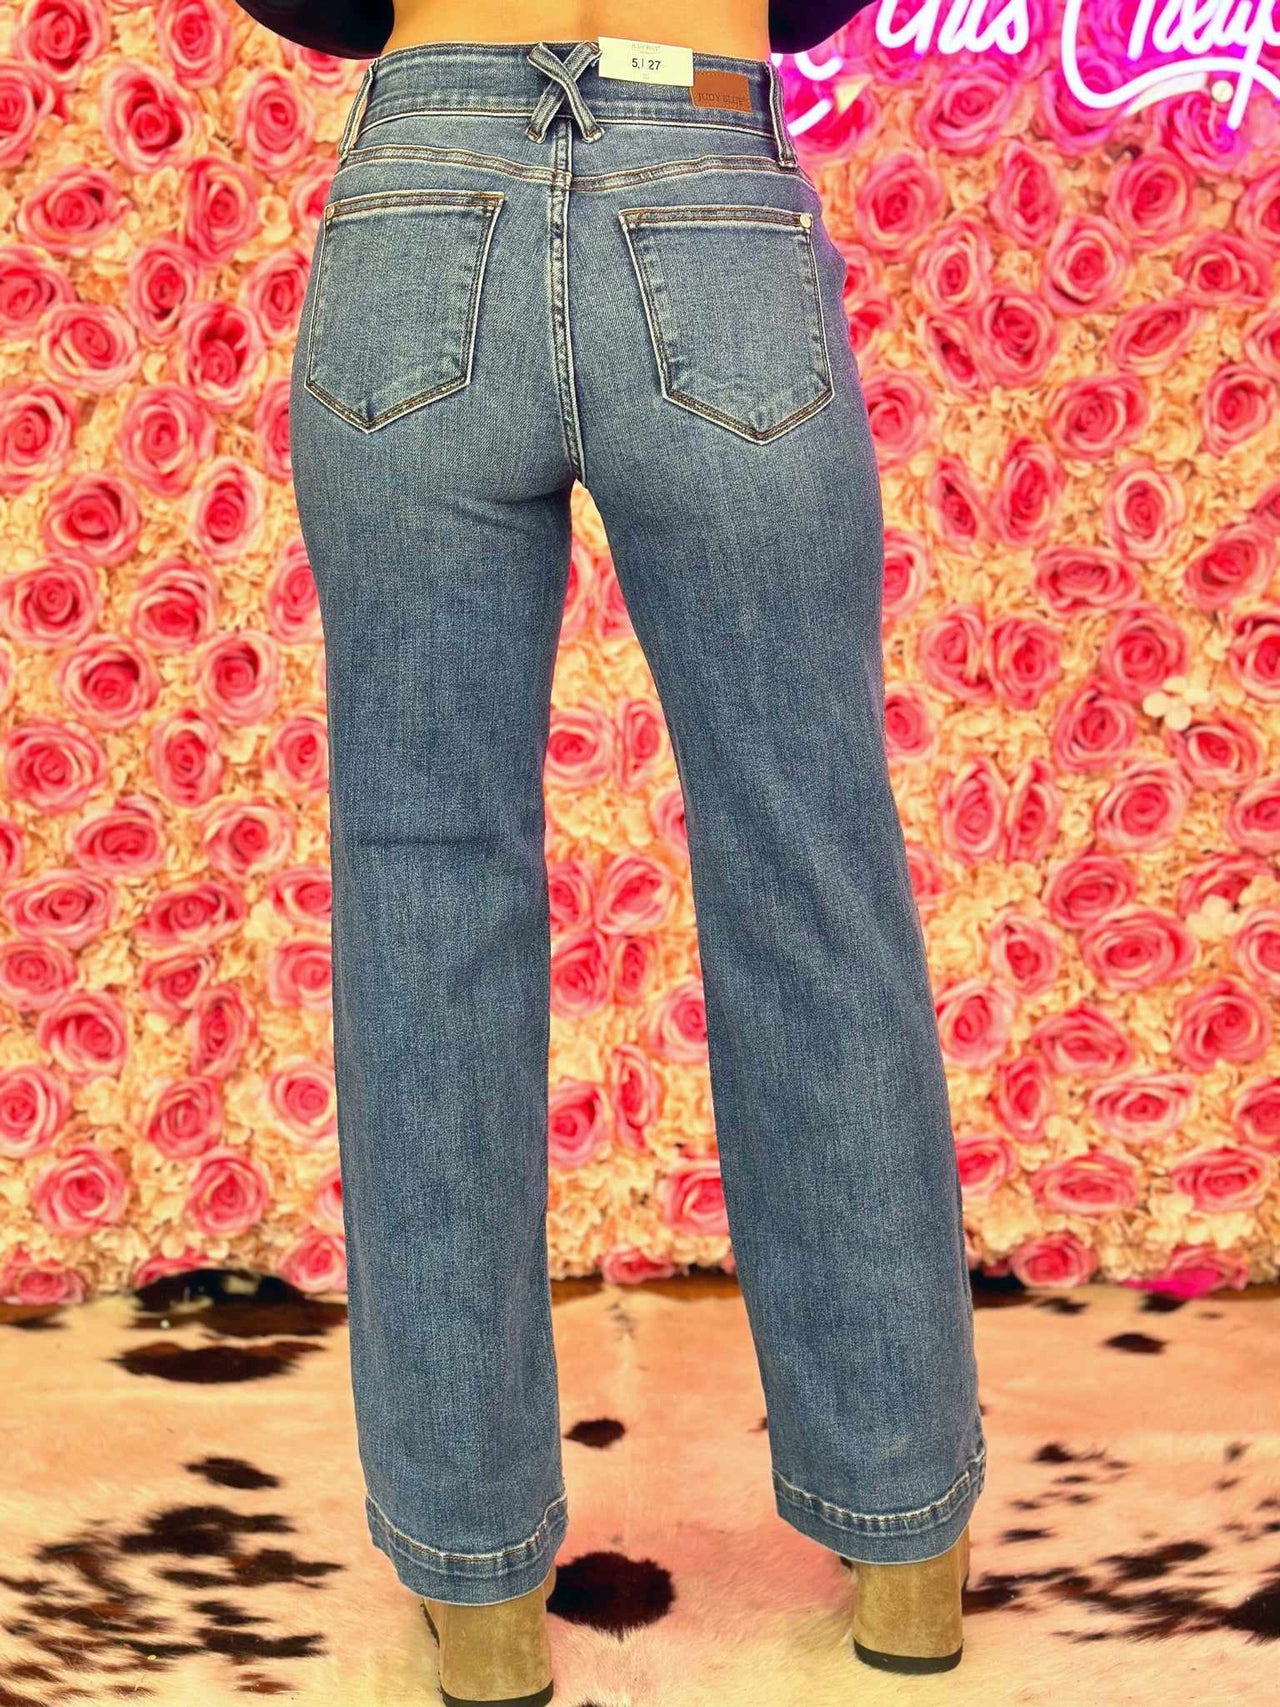 Wide leg jeans for women